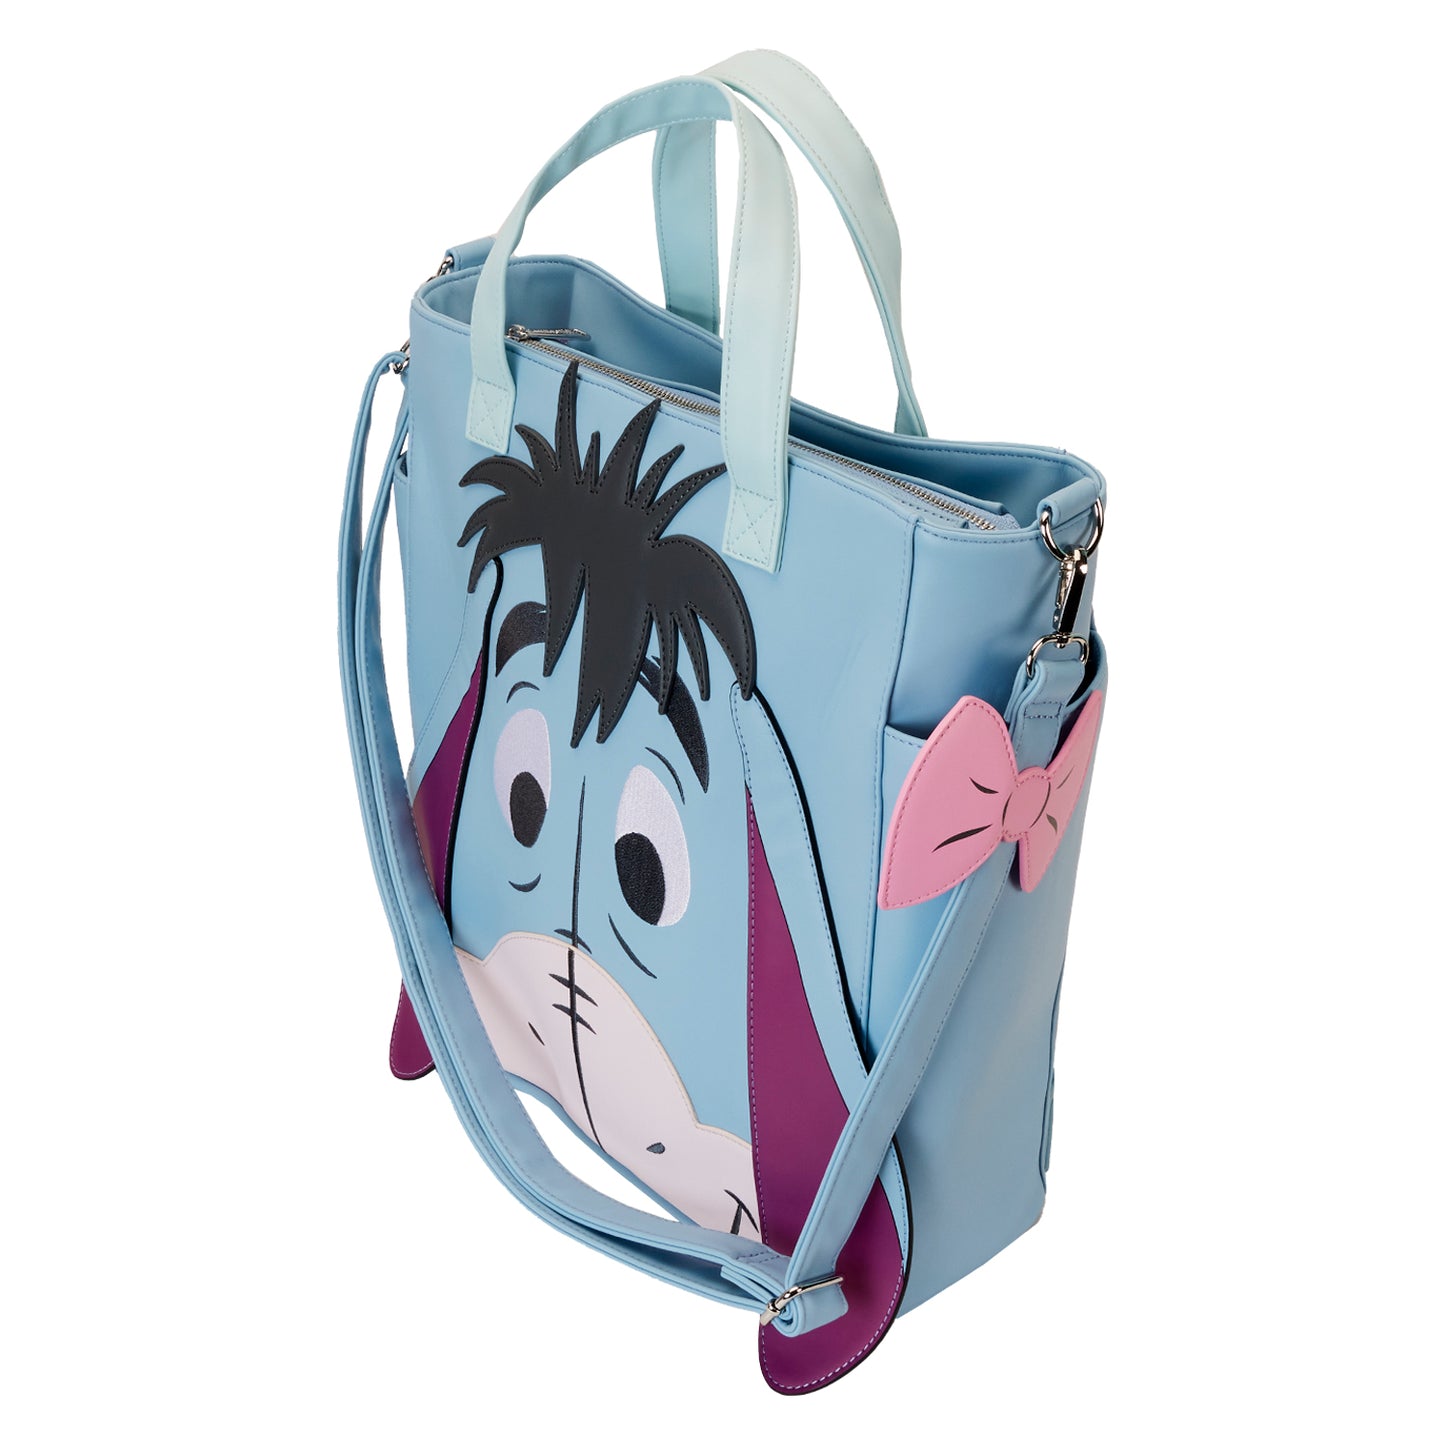 Winnie the Pooh Eeyore Convertible Backpack & Tote Bag *PRE-ORDER ITEM*